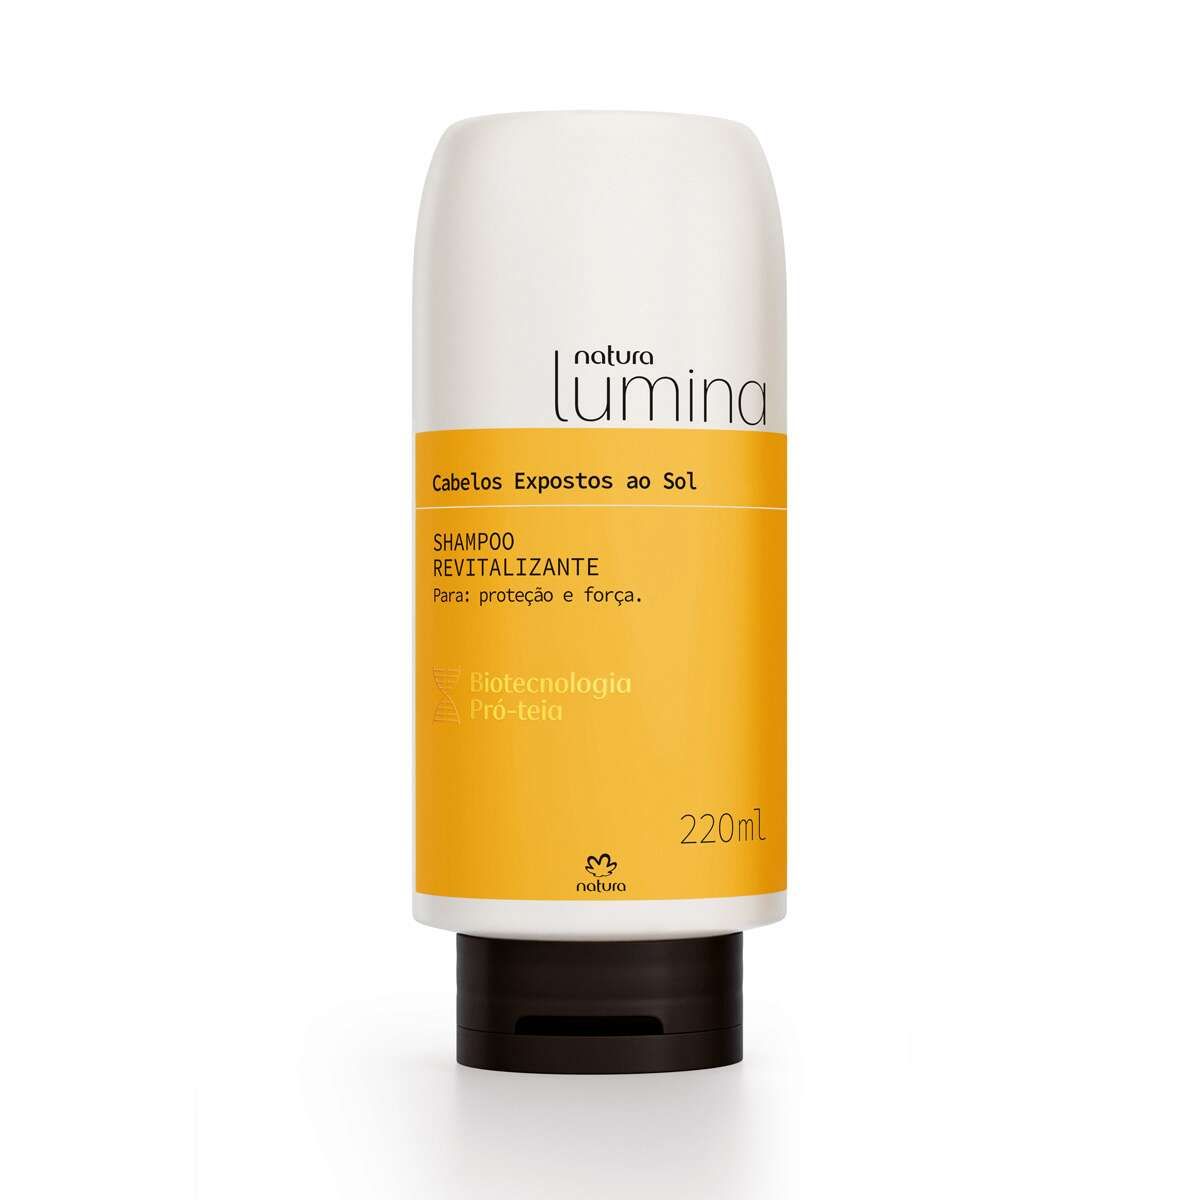 LançamentoCod. 126479 - Shampoo Revitalizante para Cabelos Expostos ao Sol Lumina - 220 ml
    
... | Natura BR